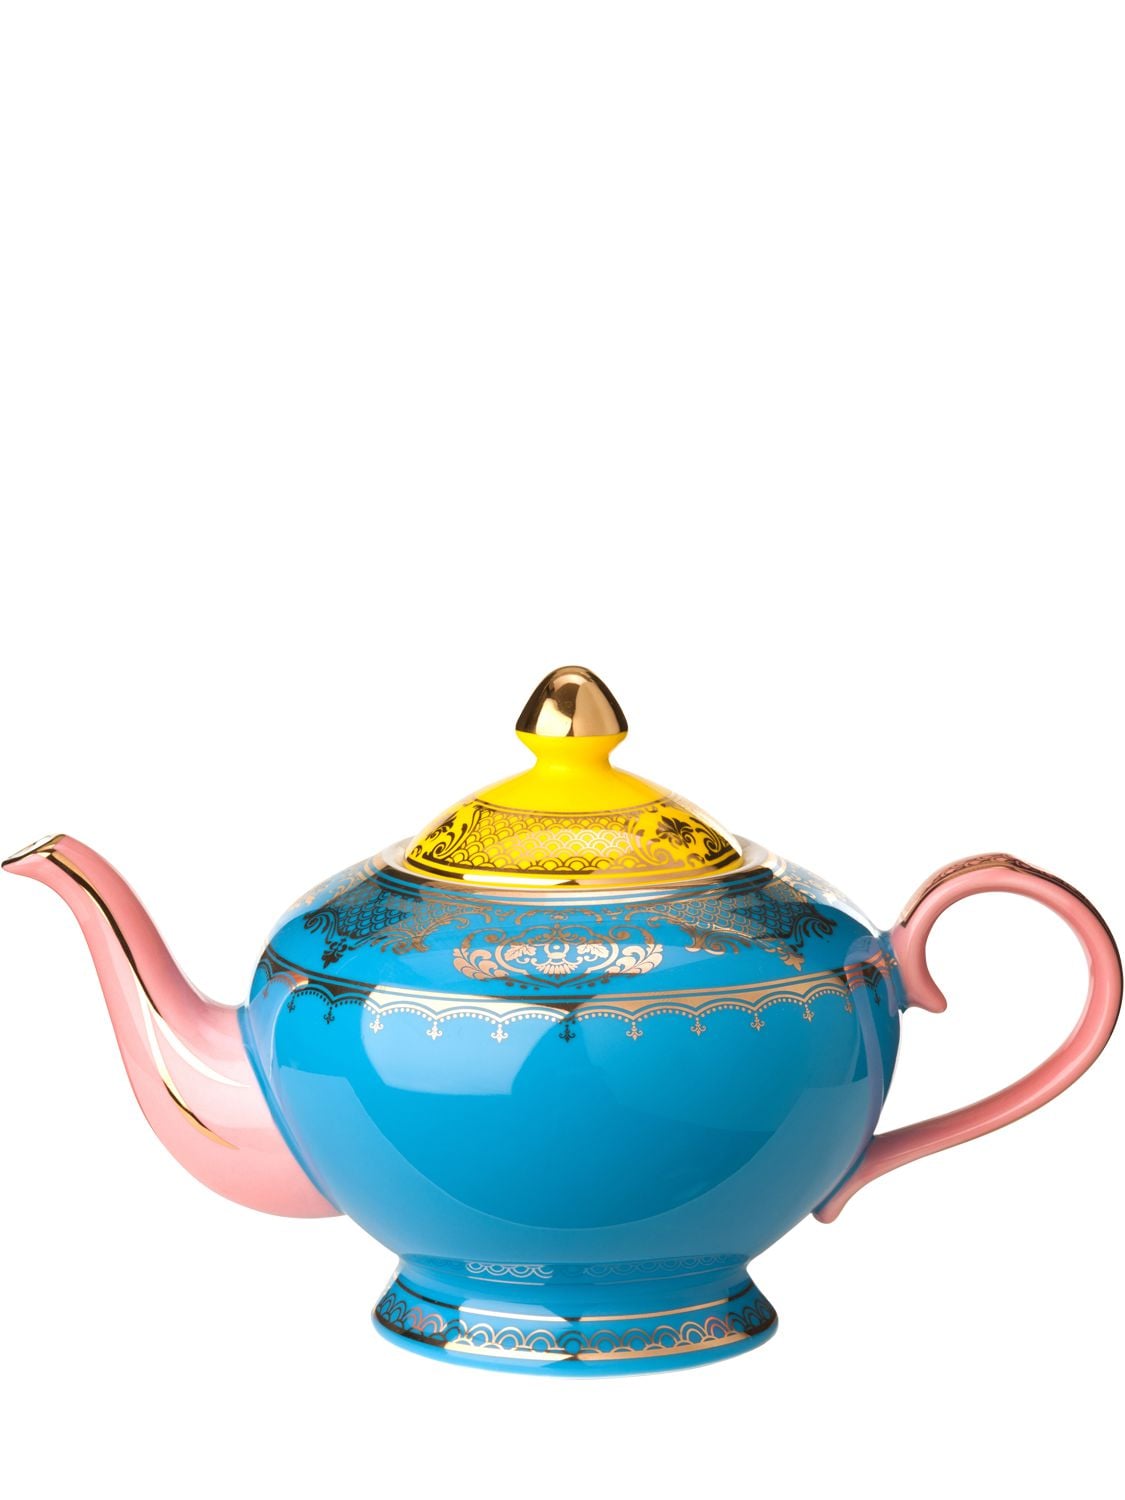 Pols Potten Grandpa茶壶 In Multicolor